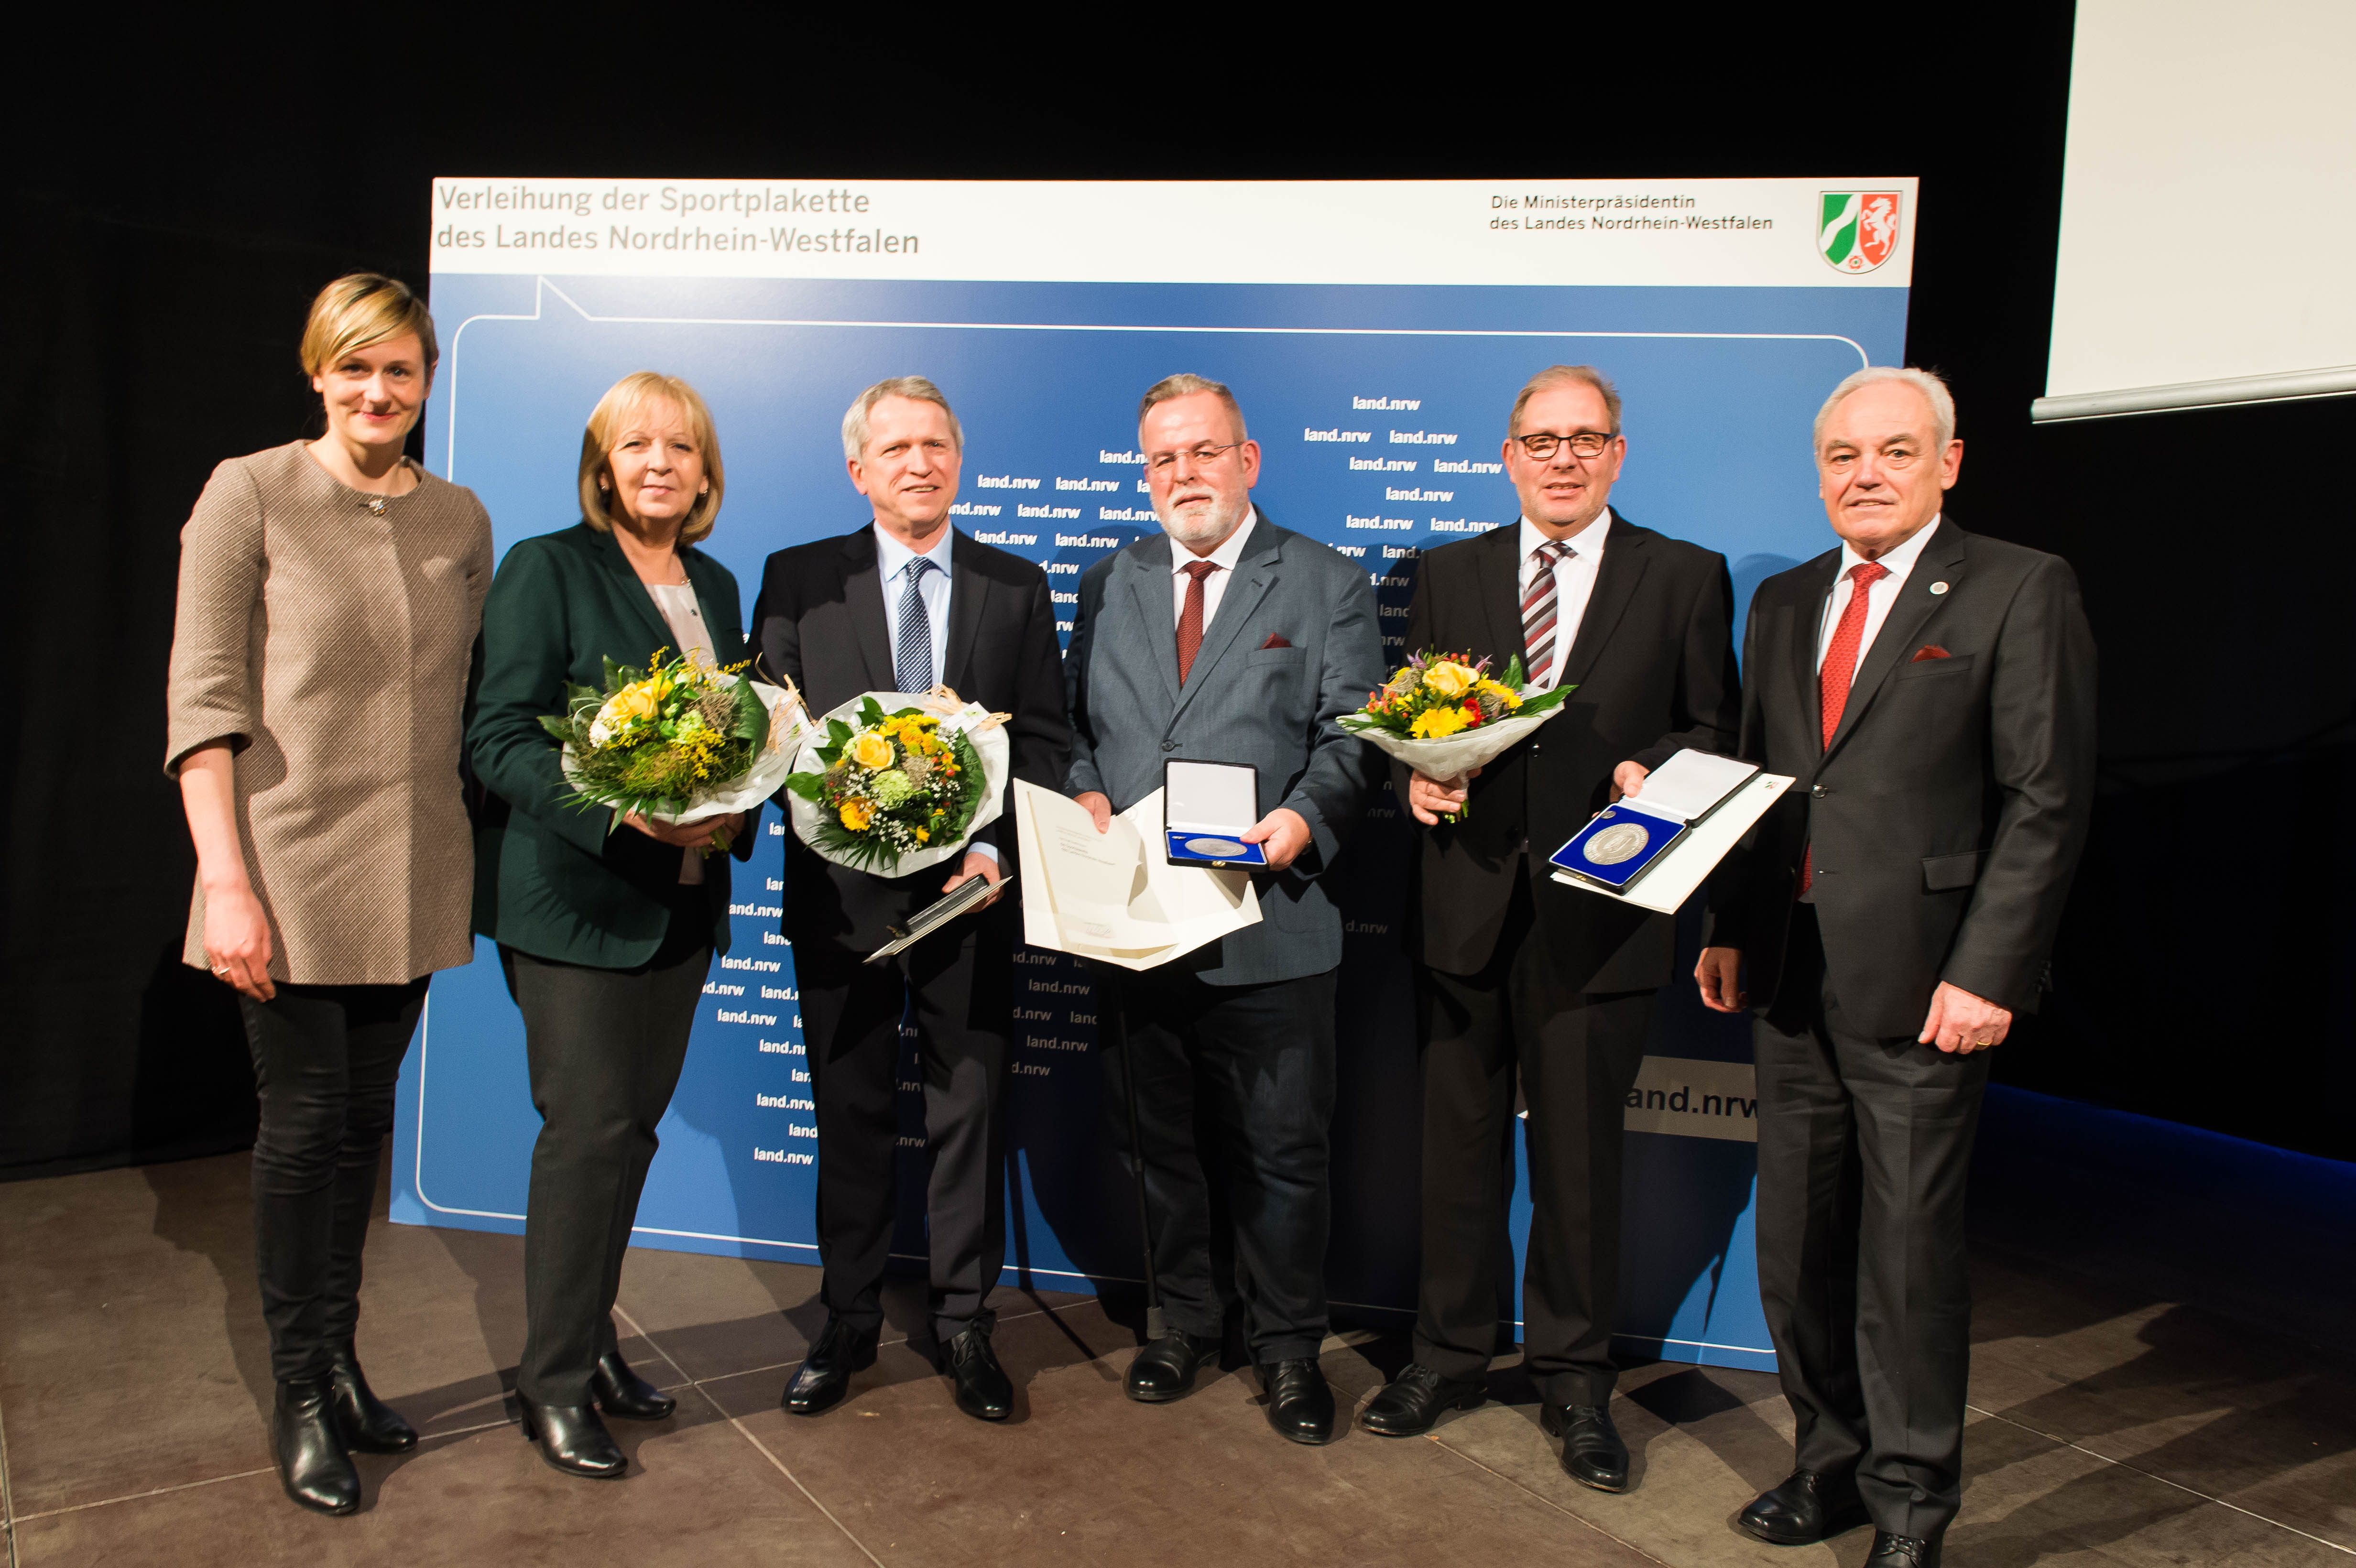 Helmut Biermann awarded with 'Sportplakette'